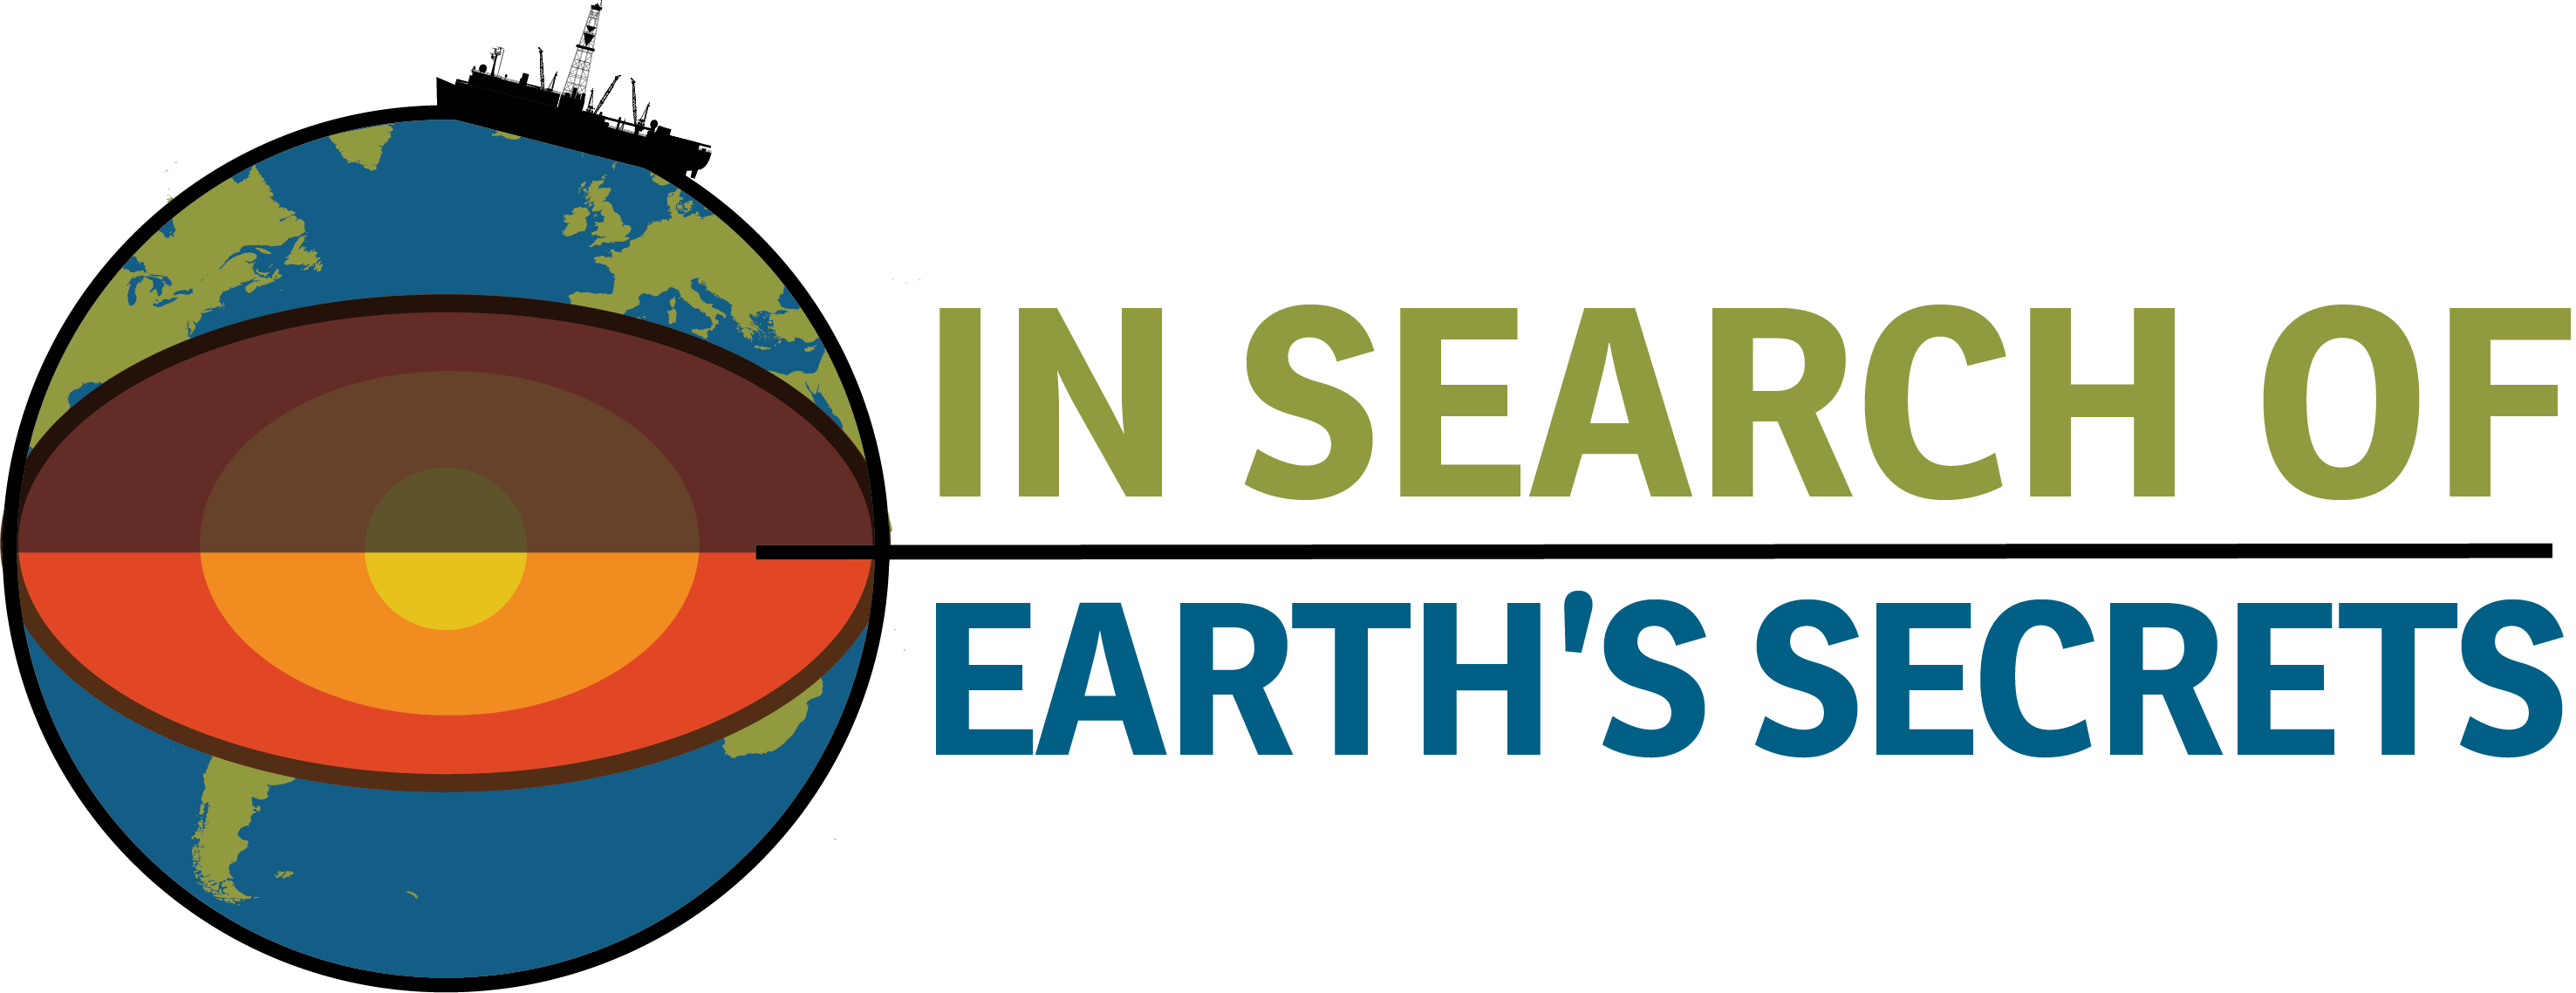 In Search Of Earth's Secrets Program Logo - Club Penguin Secret Rooms (2953x1138)